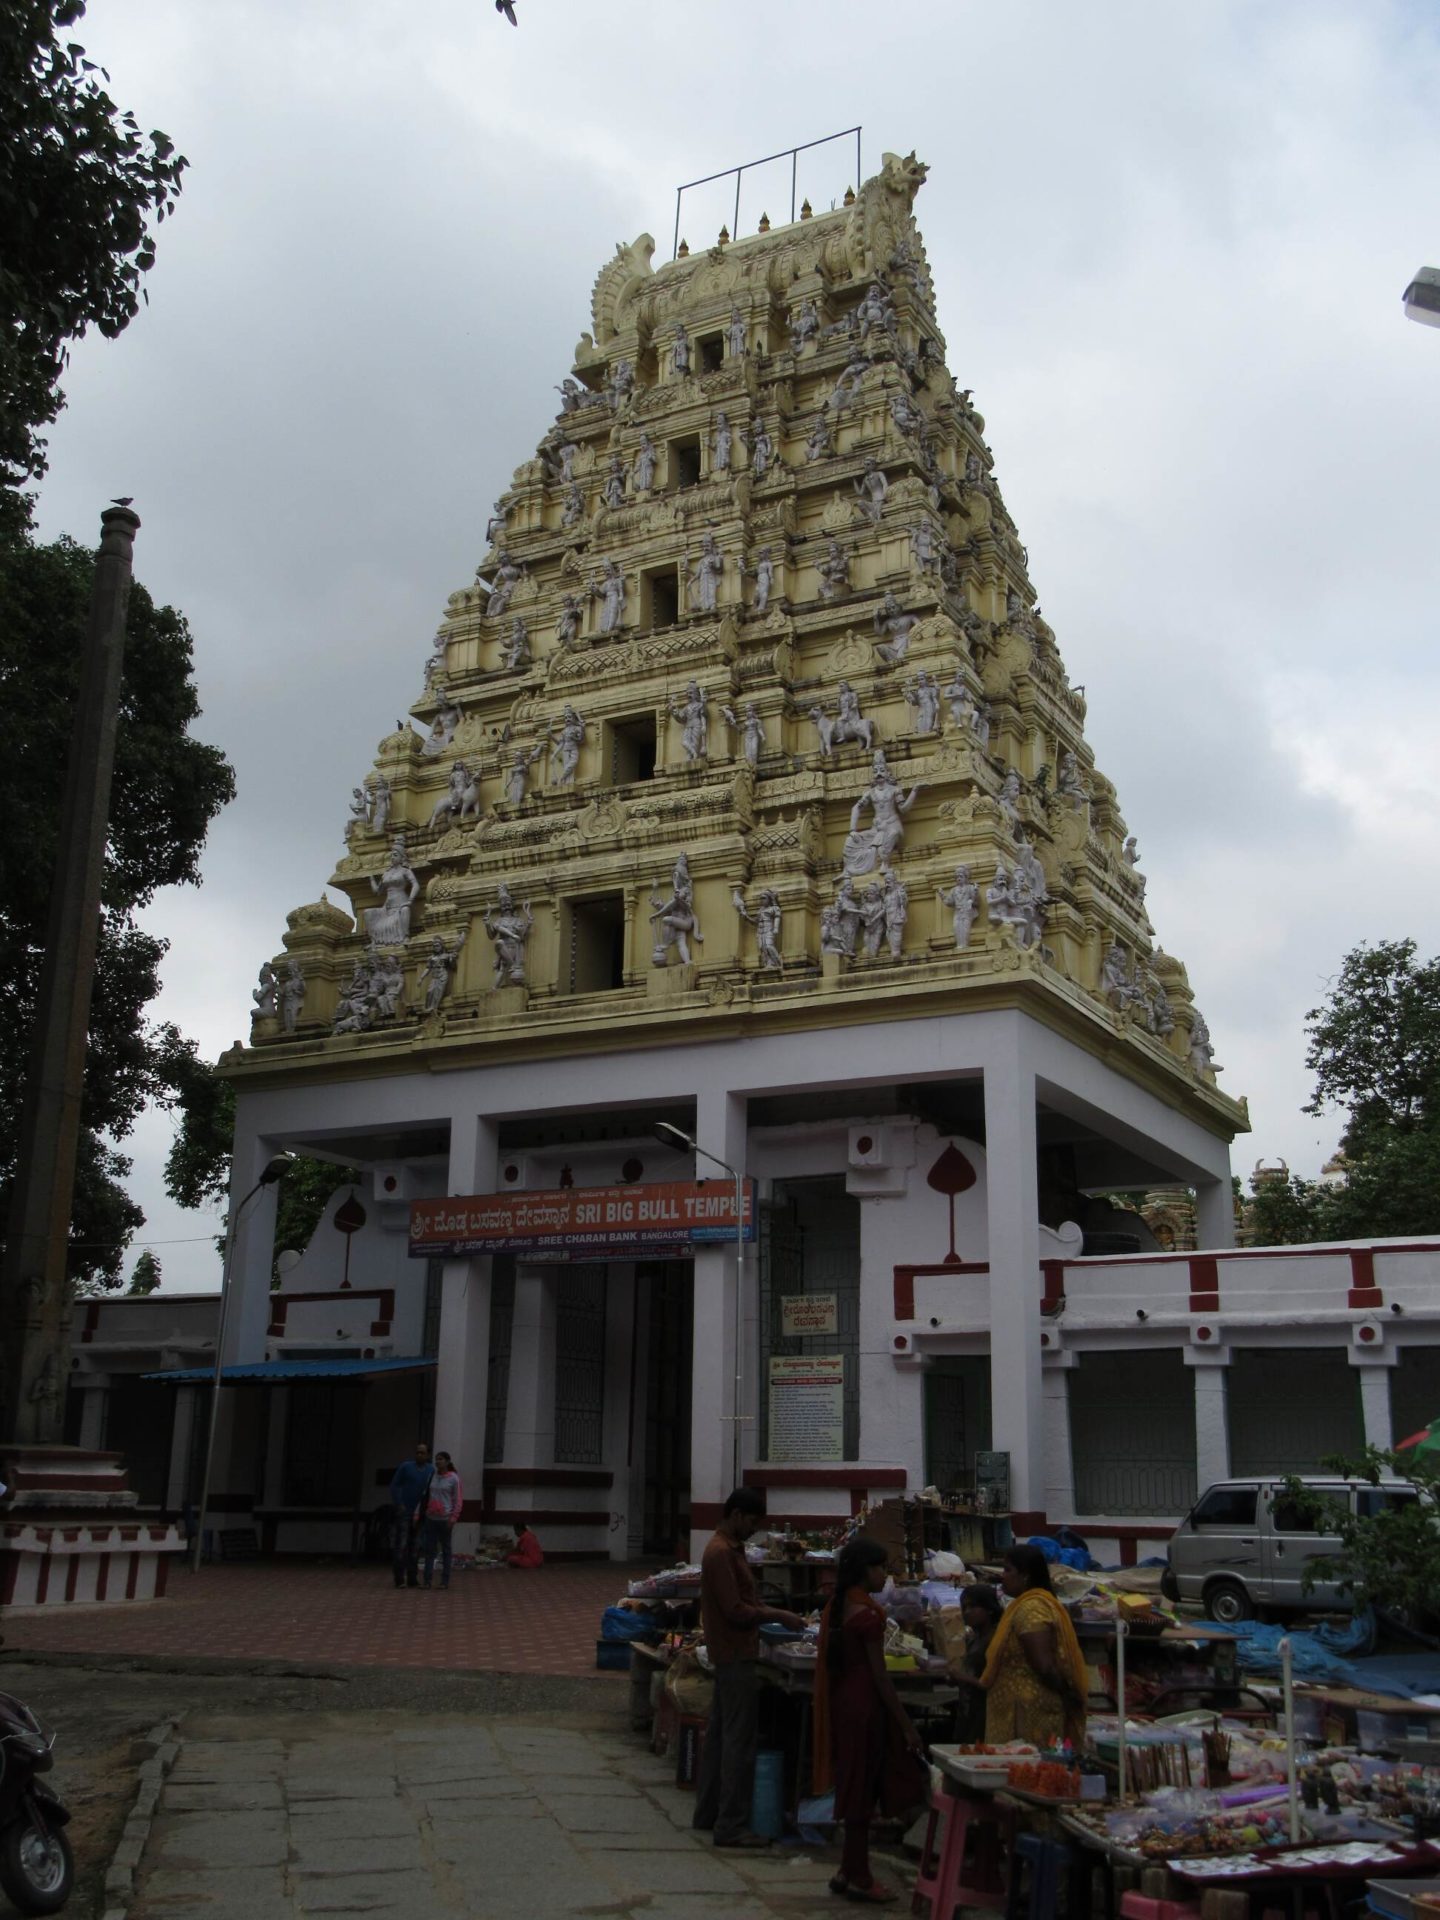 Der „Bull Temple“ in Bangalore. Im Innern erwartet die Besucher eine riesige Bullenstatue, das Reittier des Gottes Shiva.